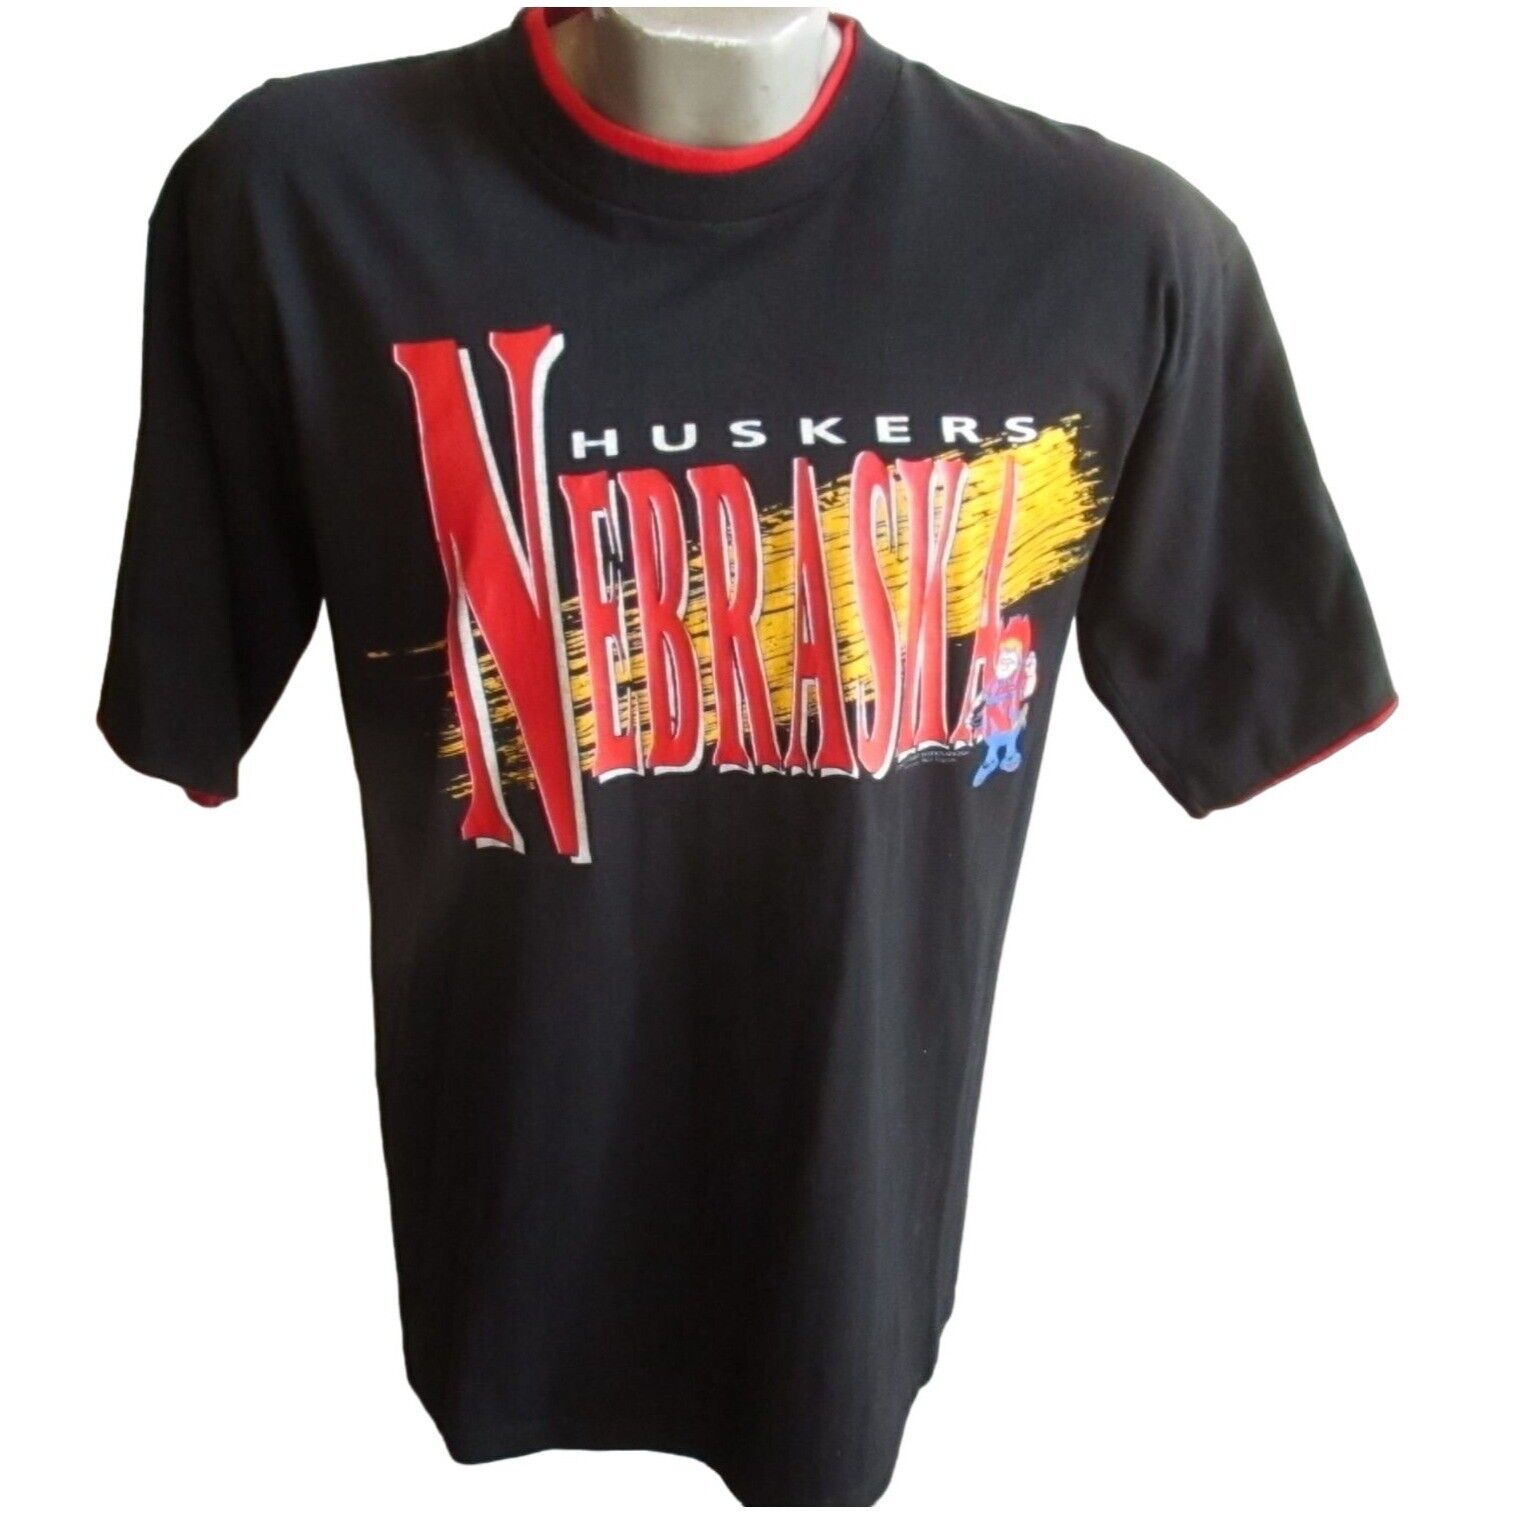 Vintage Mens T-shirt Single Stitch Large Herbie Nebraska Huskers BIG RED Black